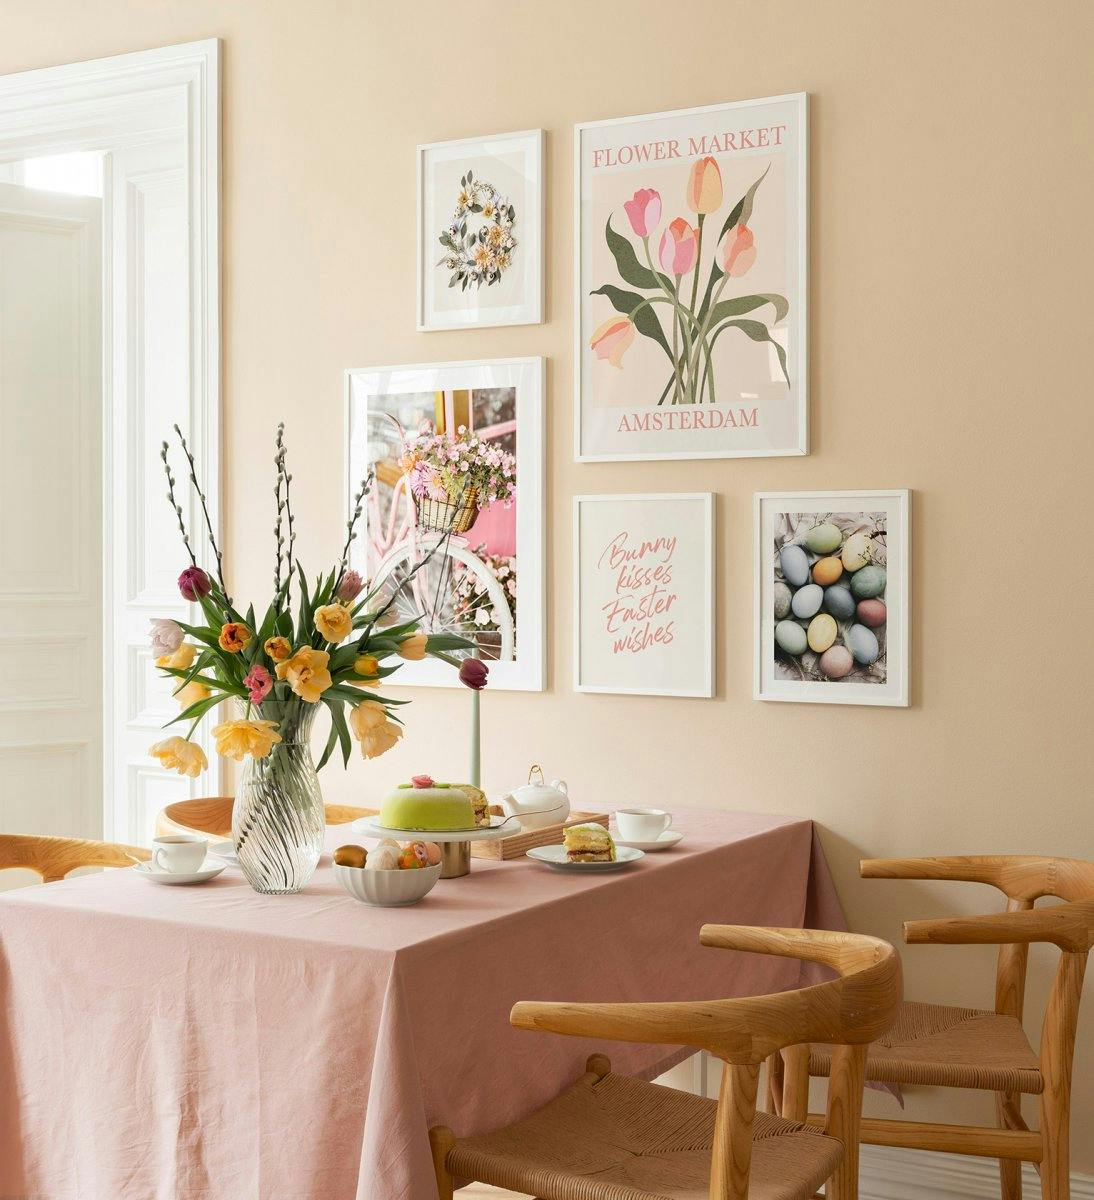 파스텔 색상의 일러스트와 사진이 담긴 부활절 갤러리월, 화이트 색상의 식탁용 나무 프레임